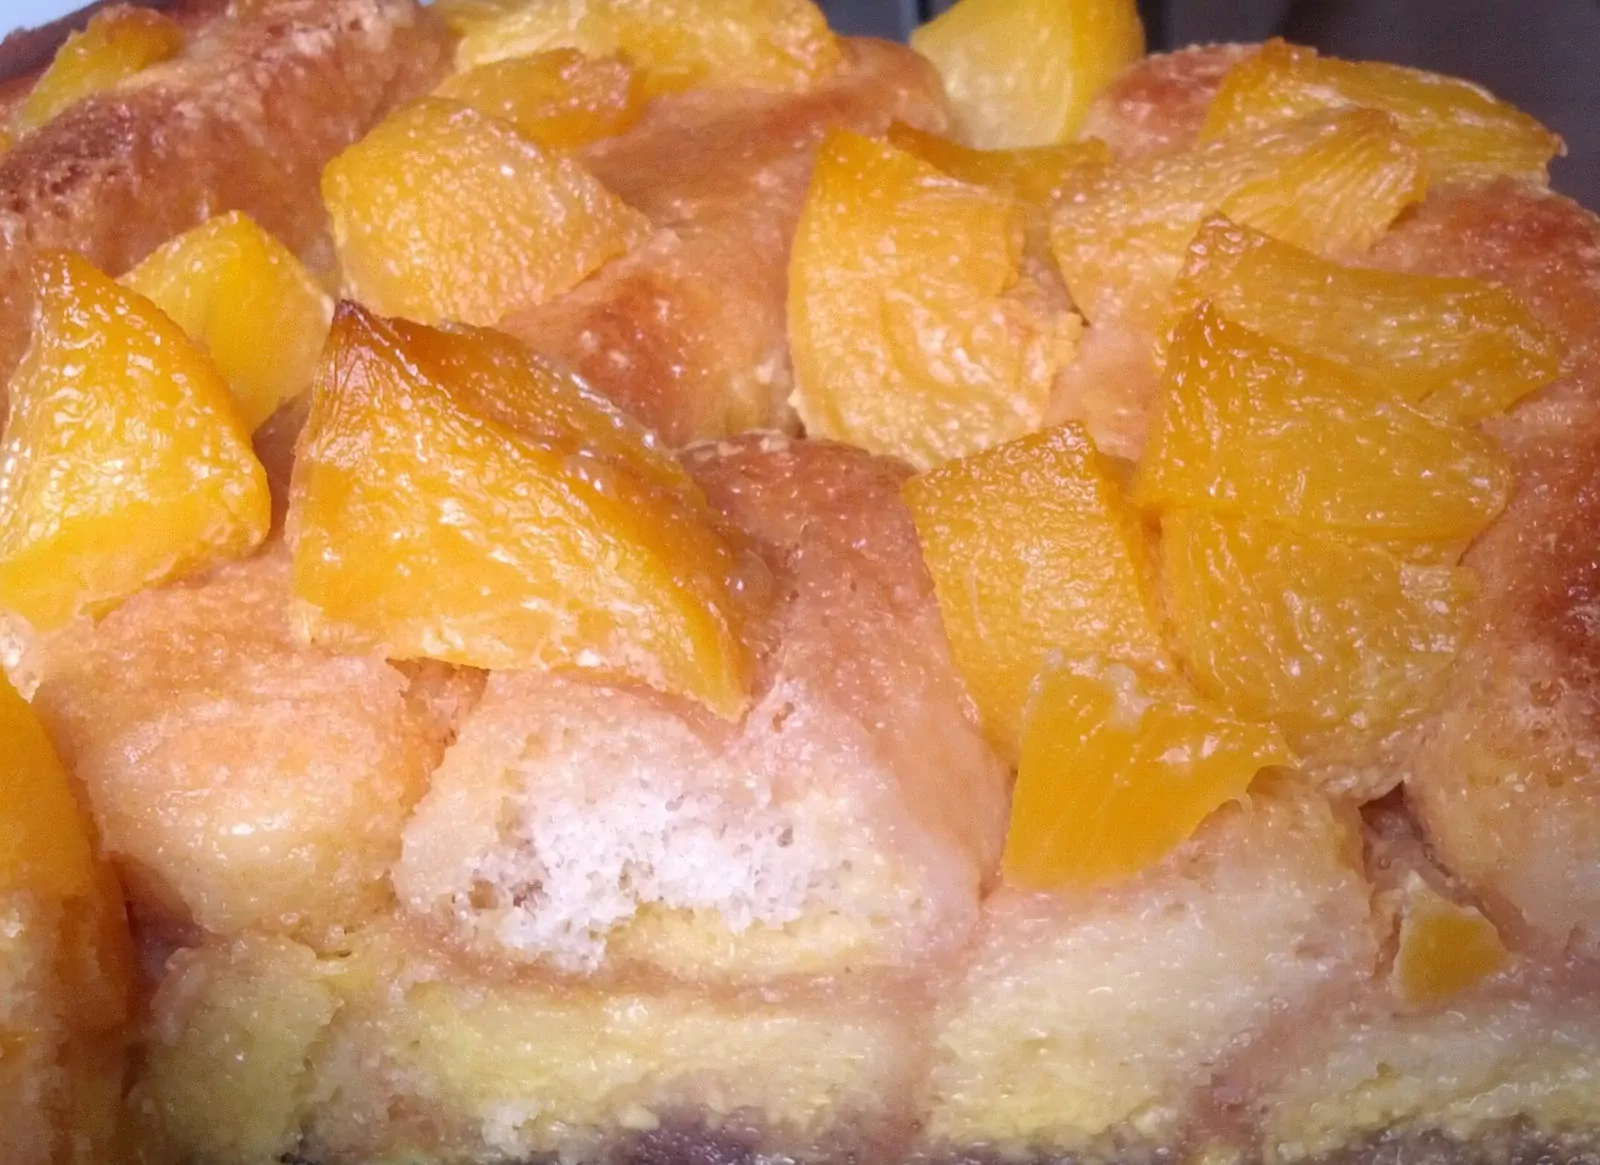 Virtuvės mitų griovėjų persikų pyragas - vos 7 ingredientai!